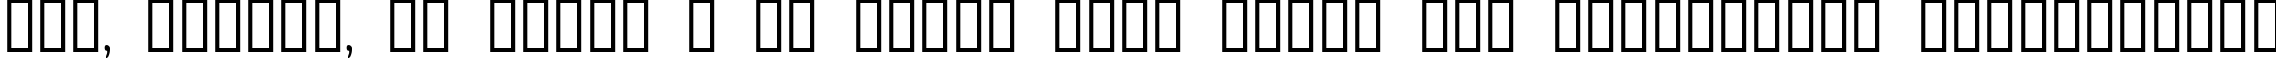 Пример написания шрифтом Antelope H текста на украинском